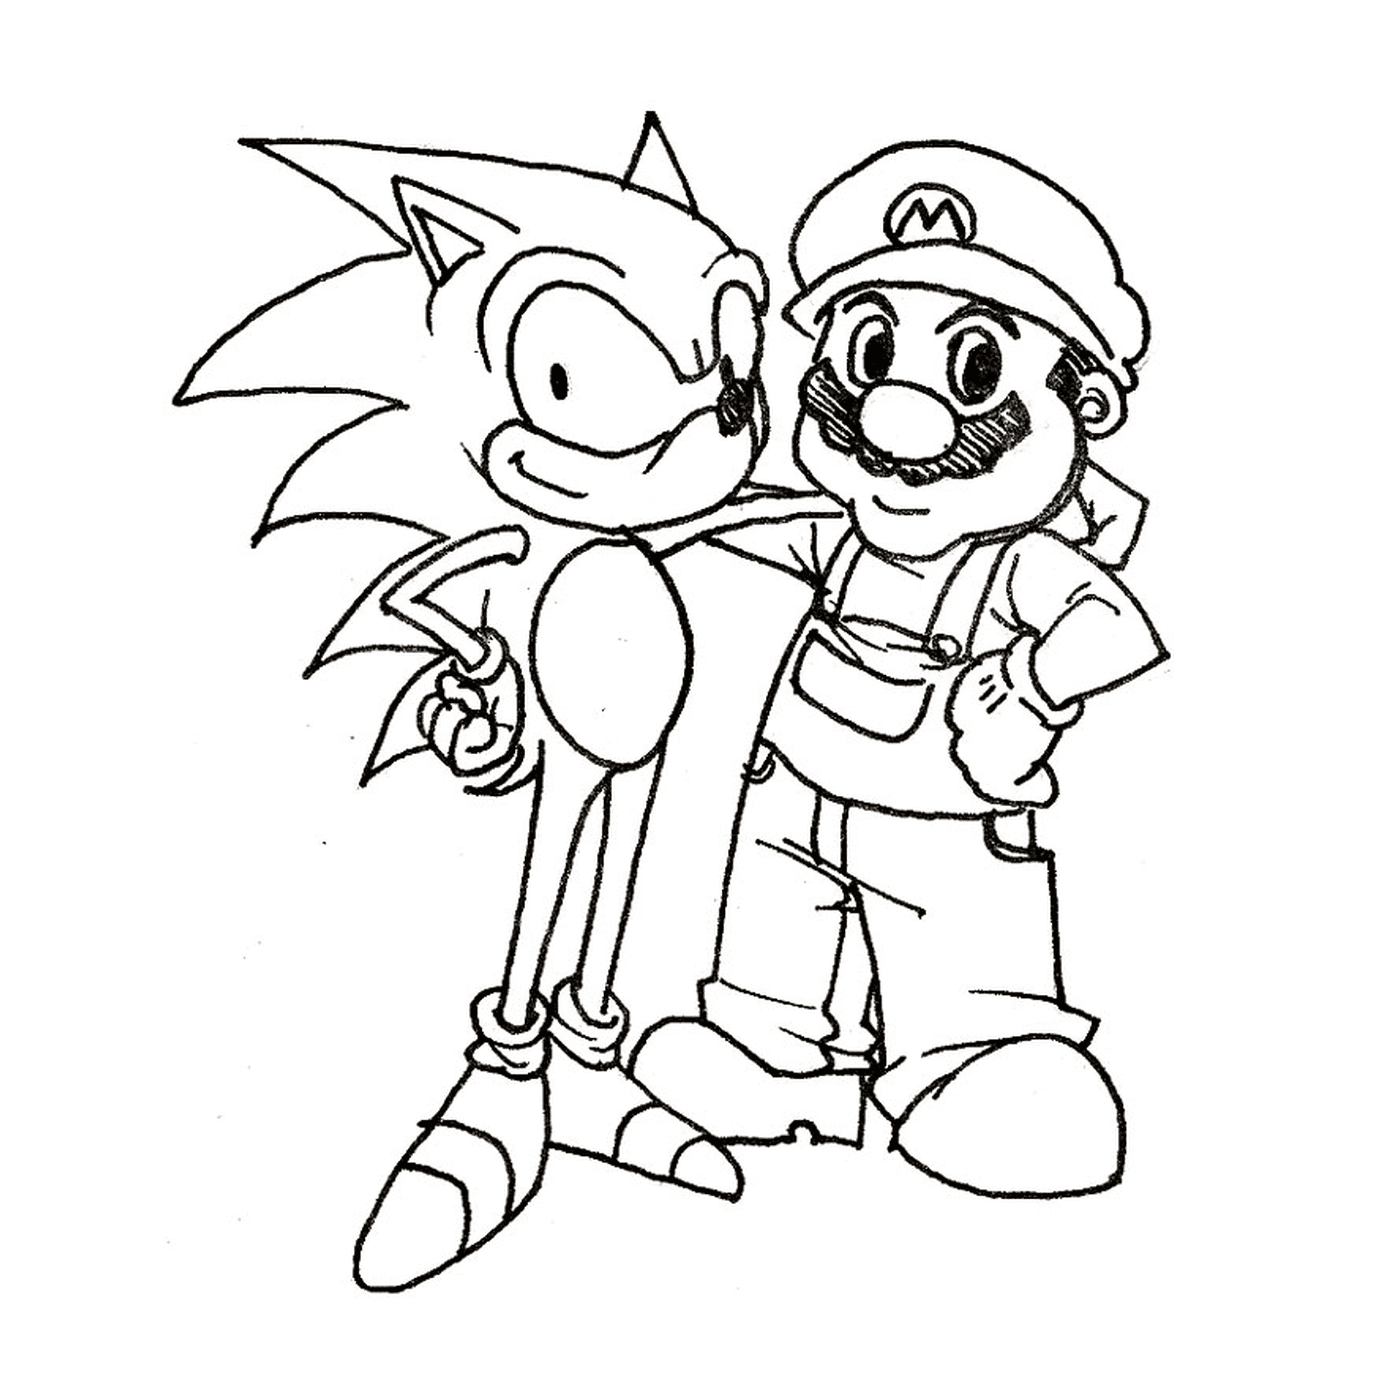  Mario und Sonic zusammen 